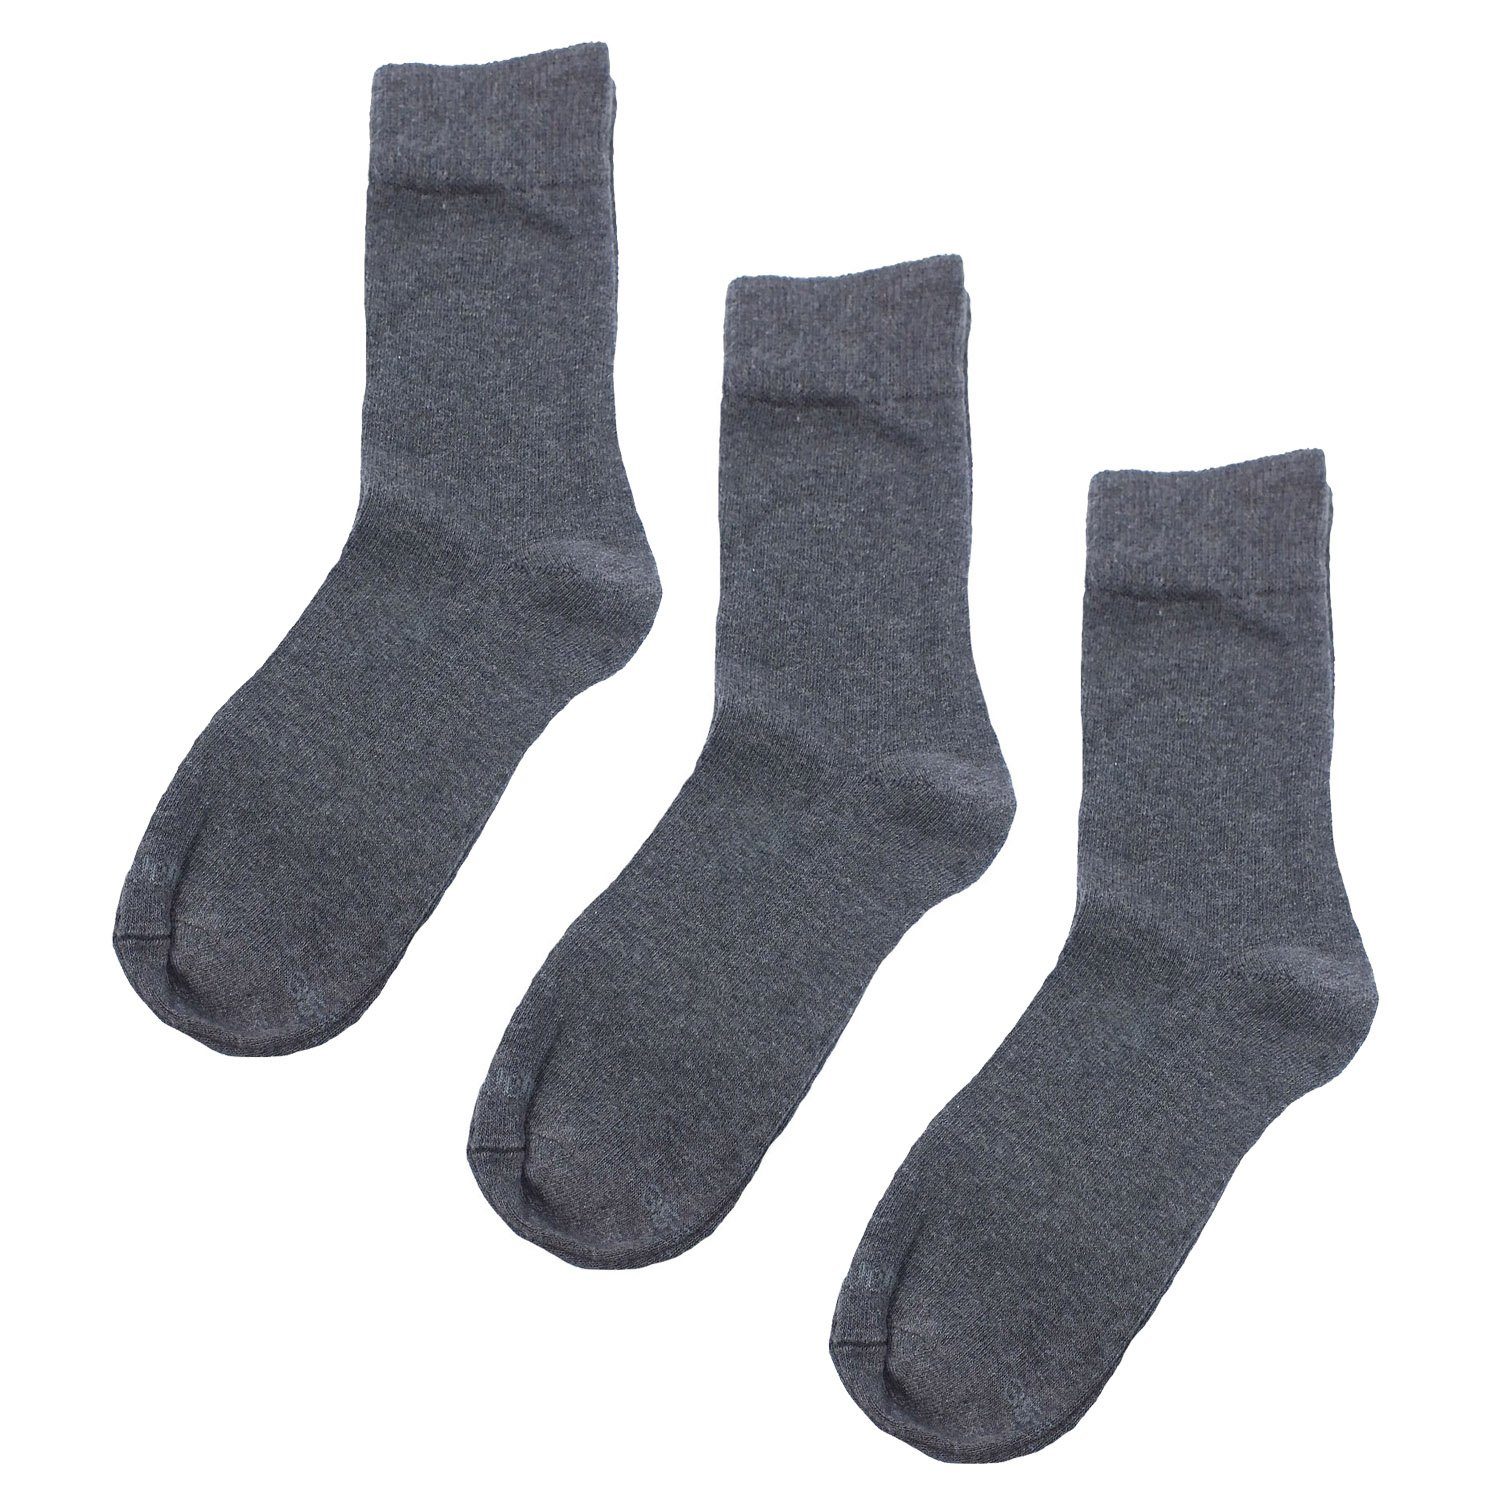 s.Oliver Langsocken S20022 (Packung, 3-Paar, 3 Paar) Herren & Damen Socken robuste Unisex-Socken 08 anthracite